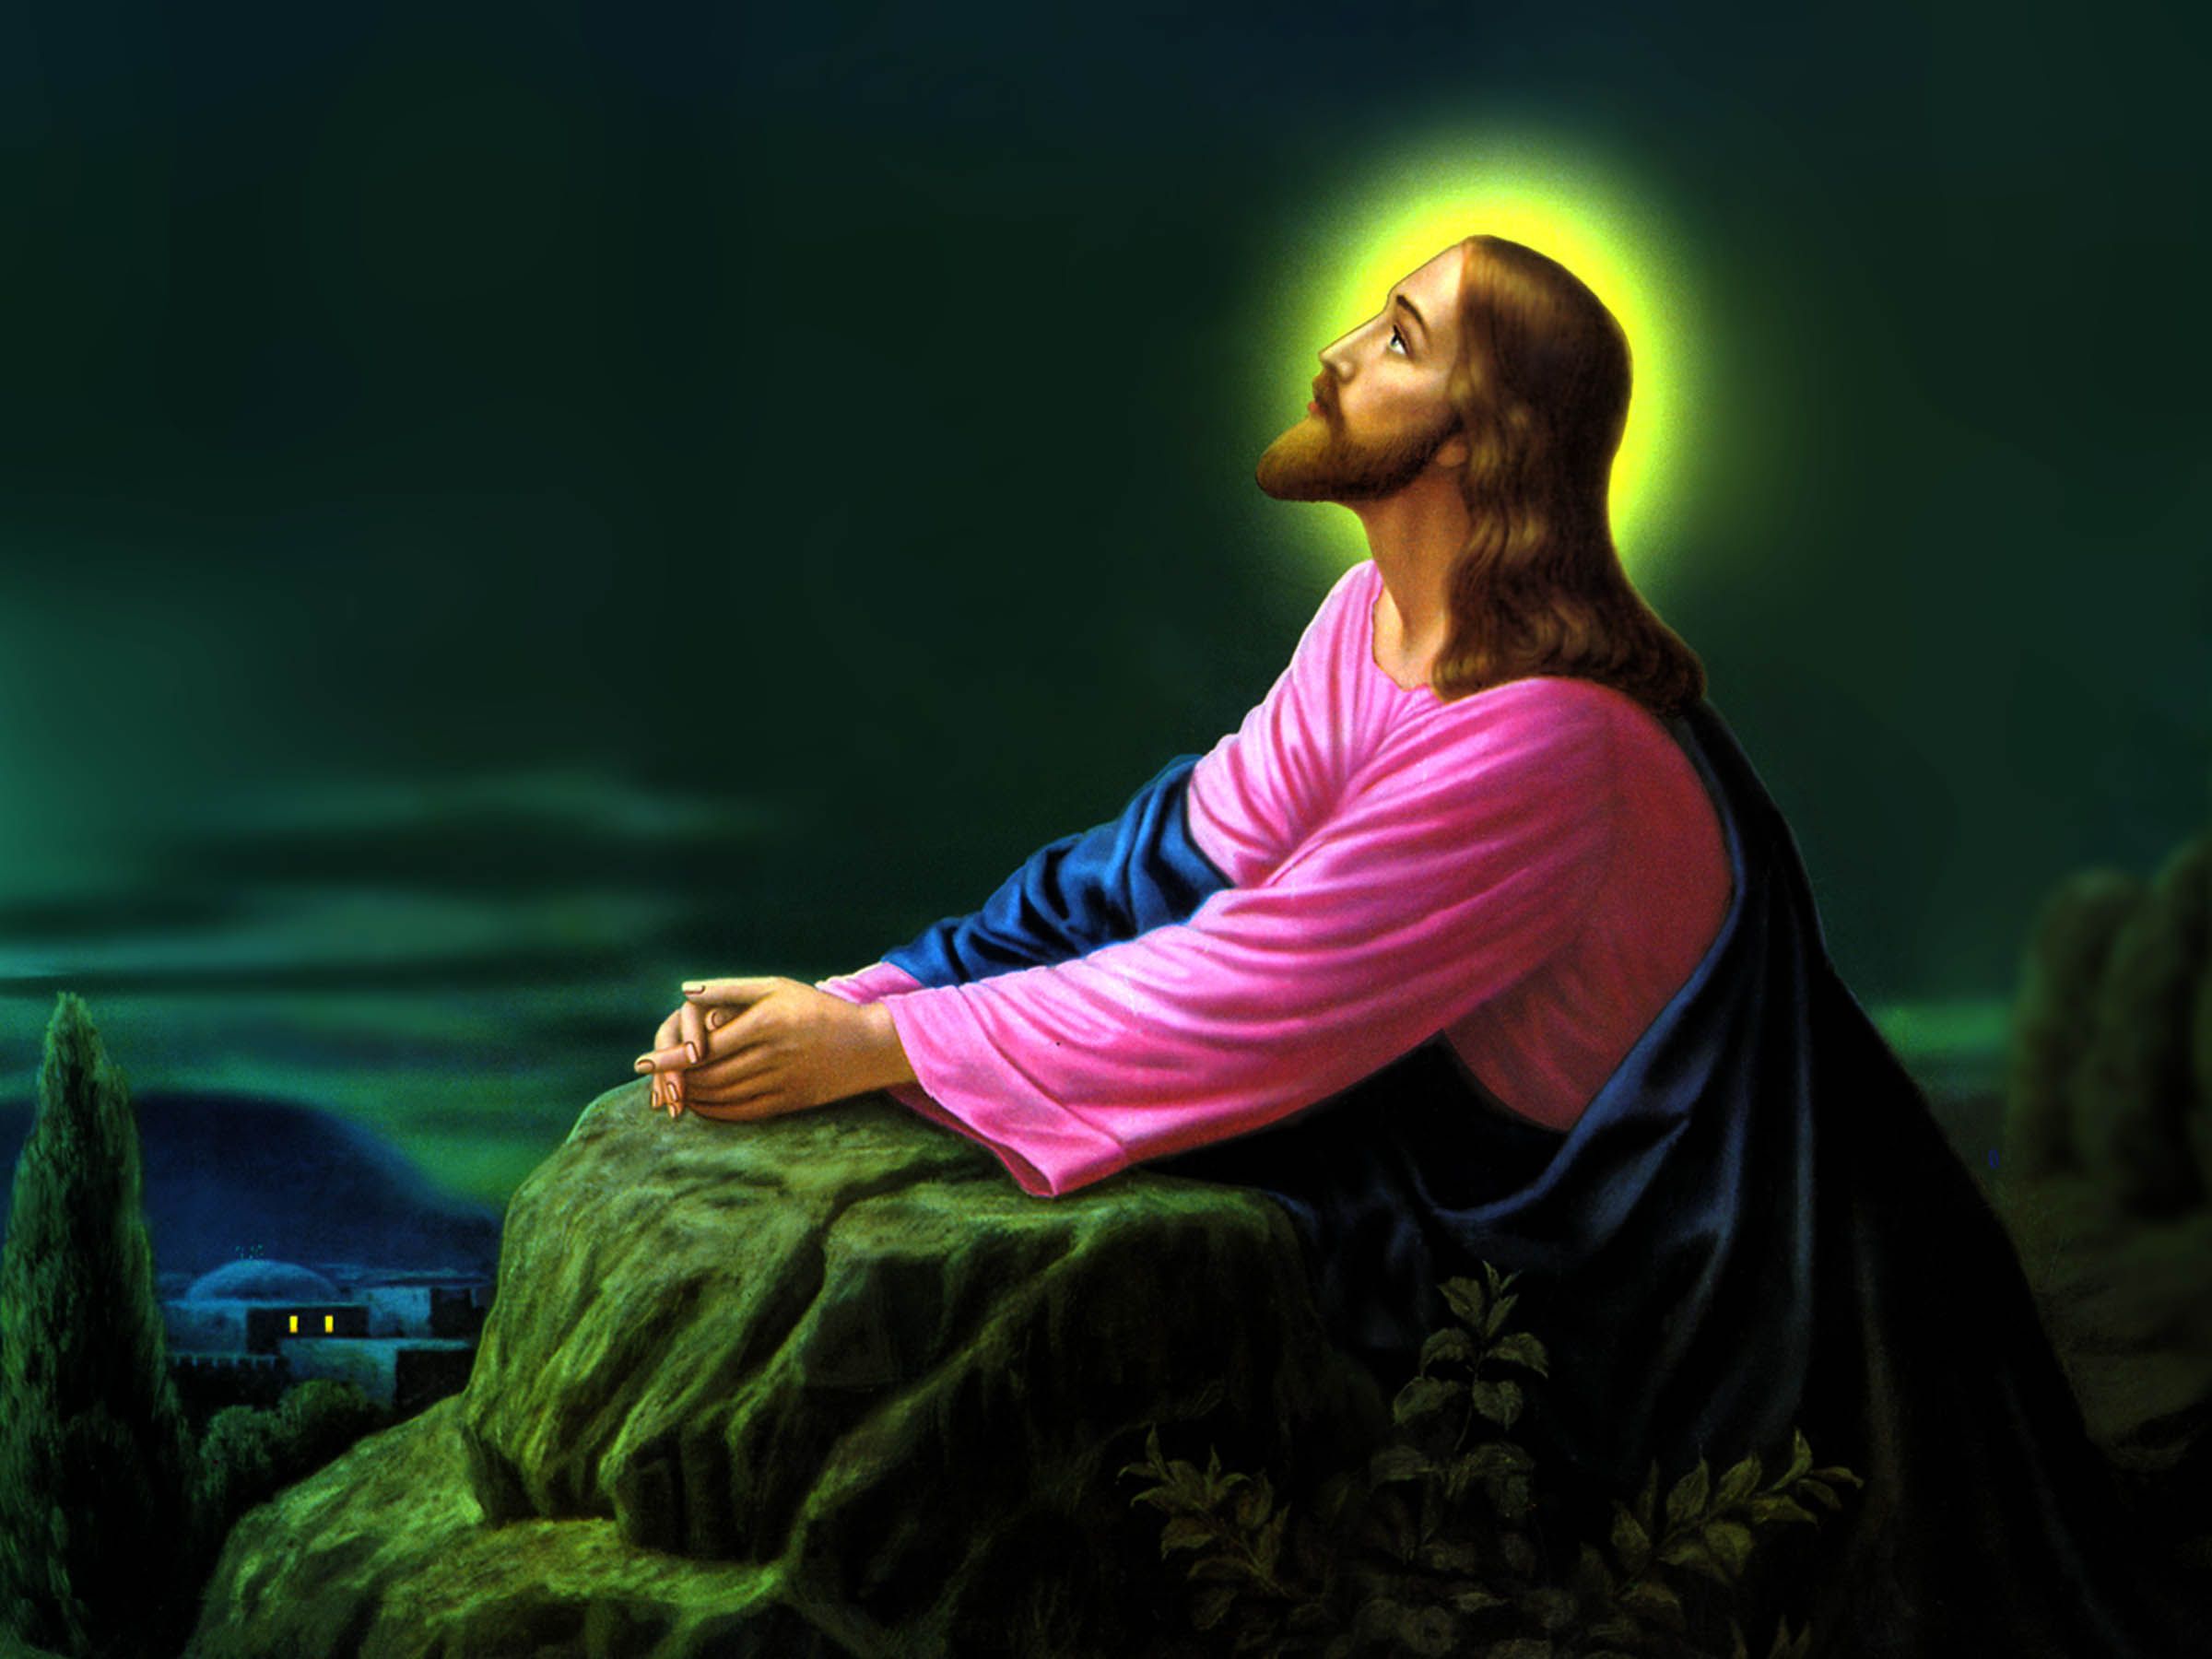 Jesus-Christ-Praying-Wallpapers-03.jpg